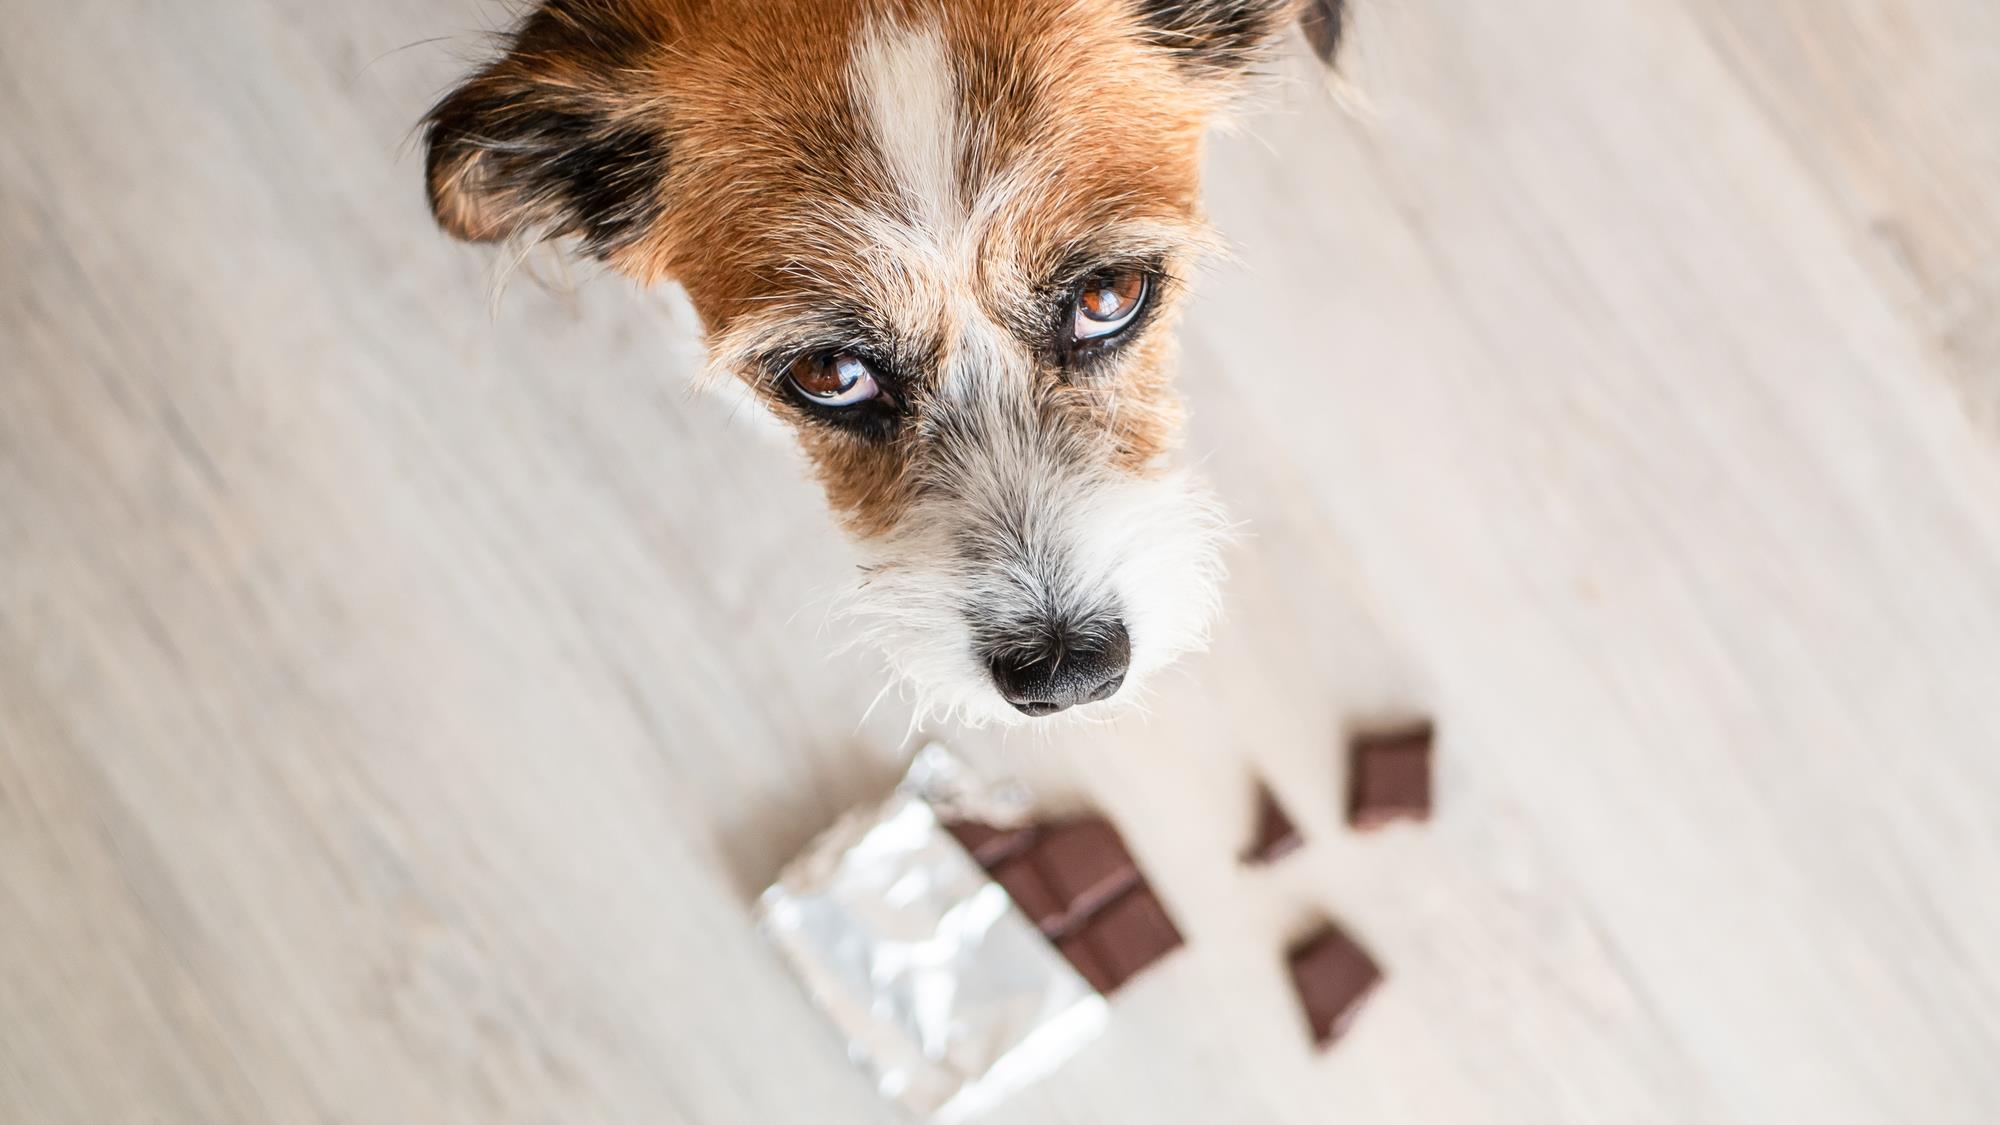 Pourquoi le chocolat est-il dangereux pour les animaux?
Pourquoi le chocolat est-il dangereux pour les animaux?